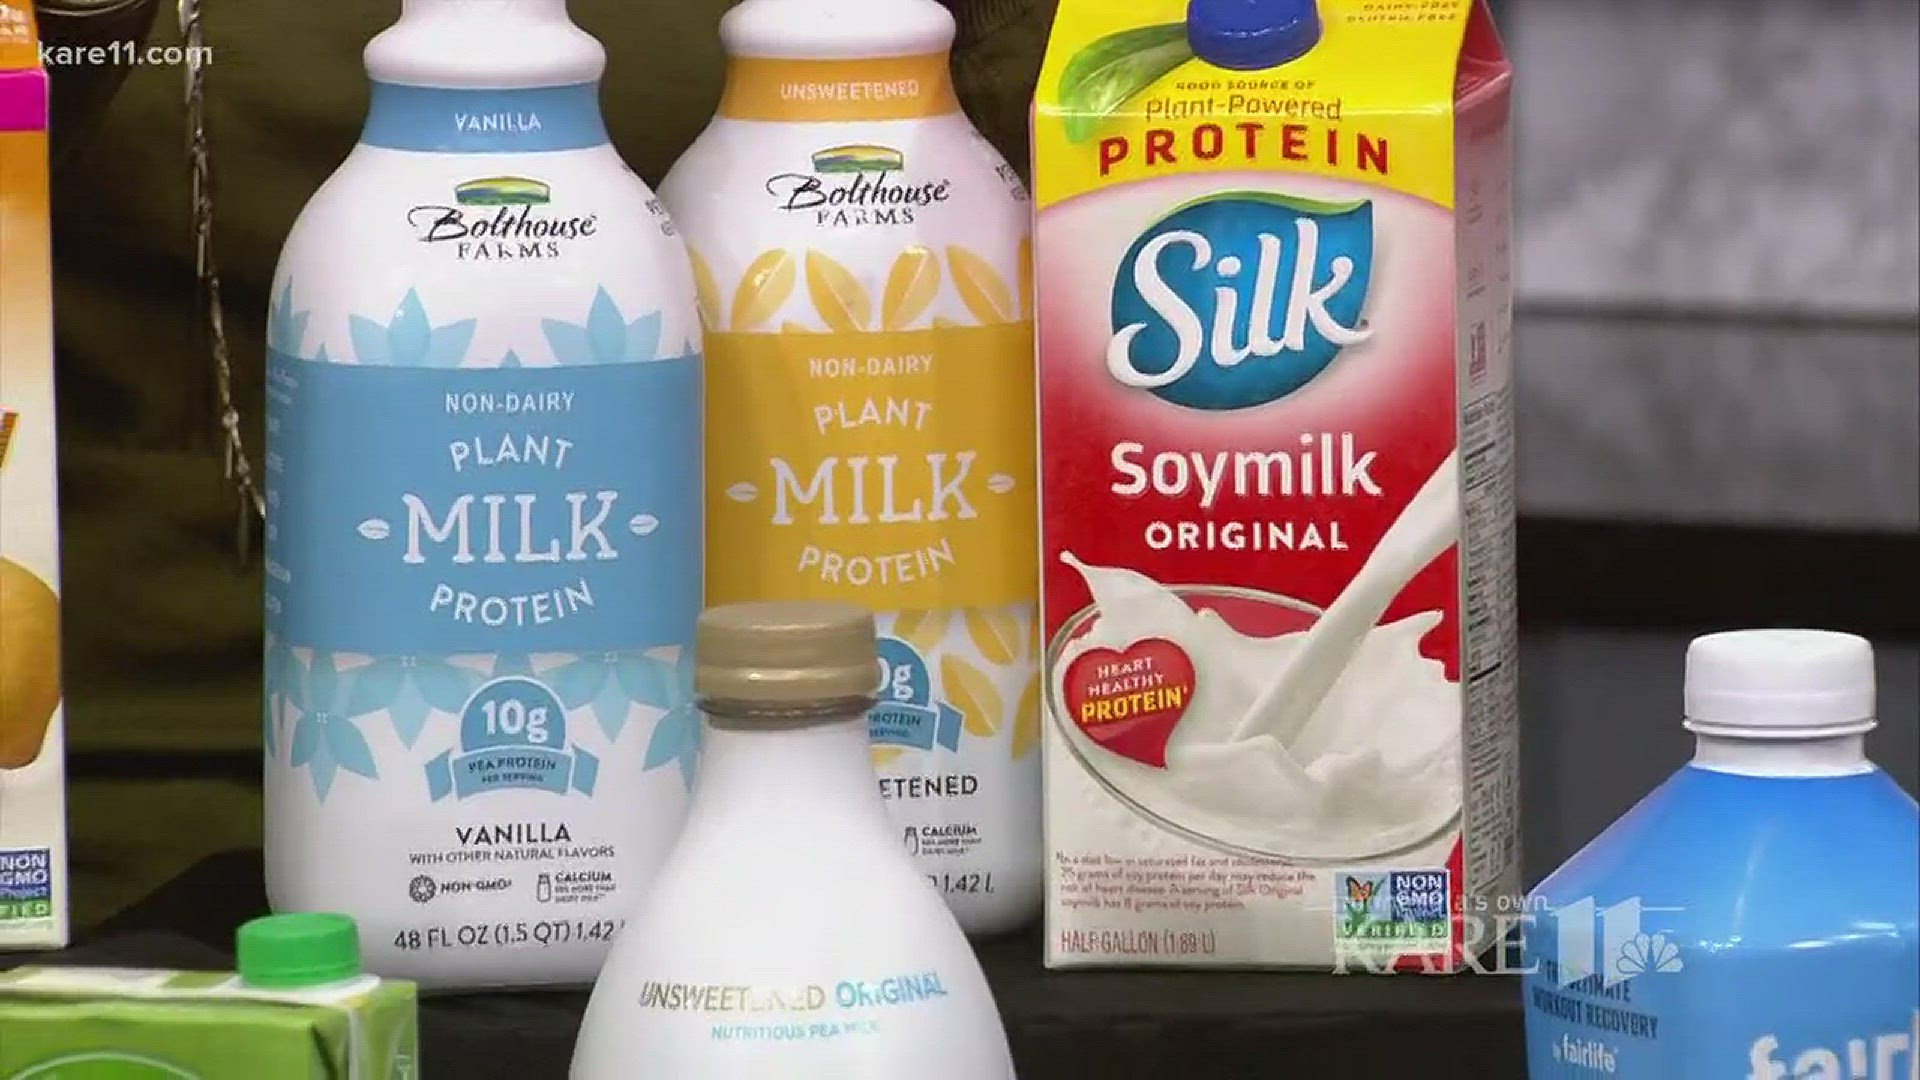 Options in milk aisle keep growing